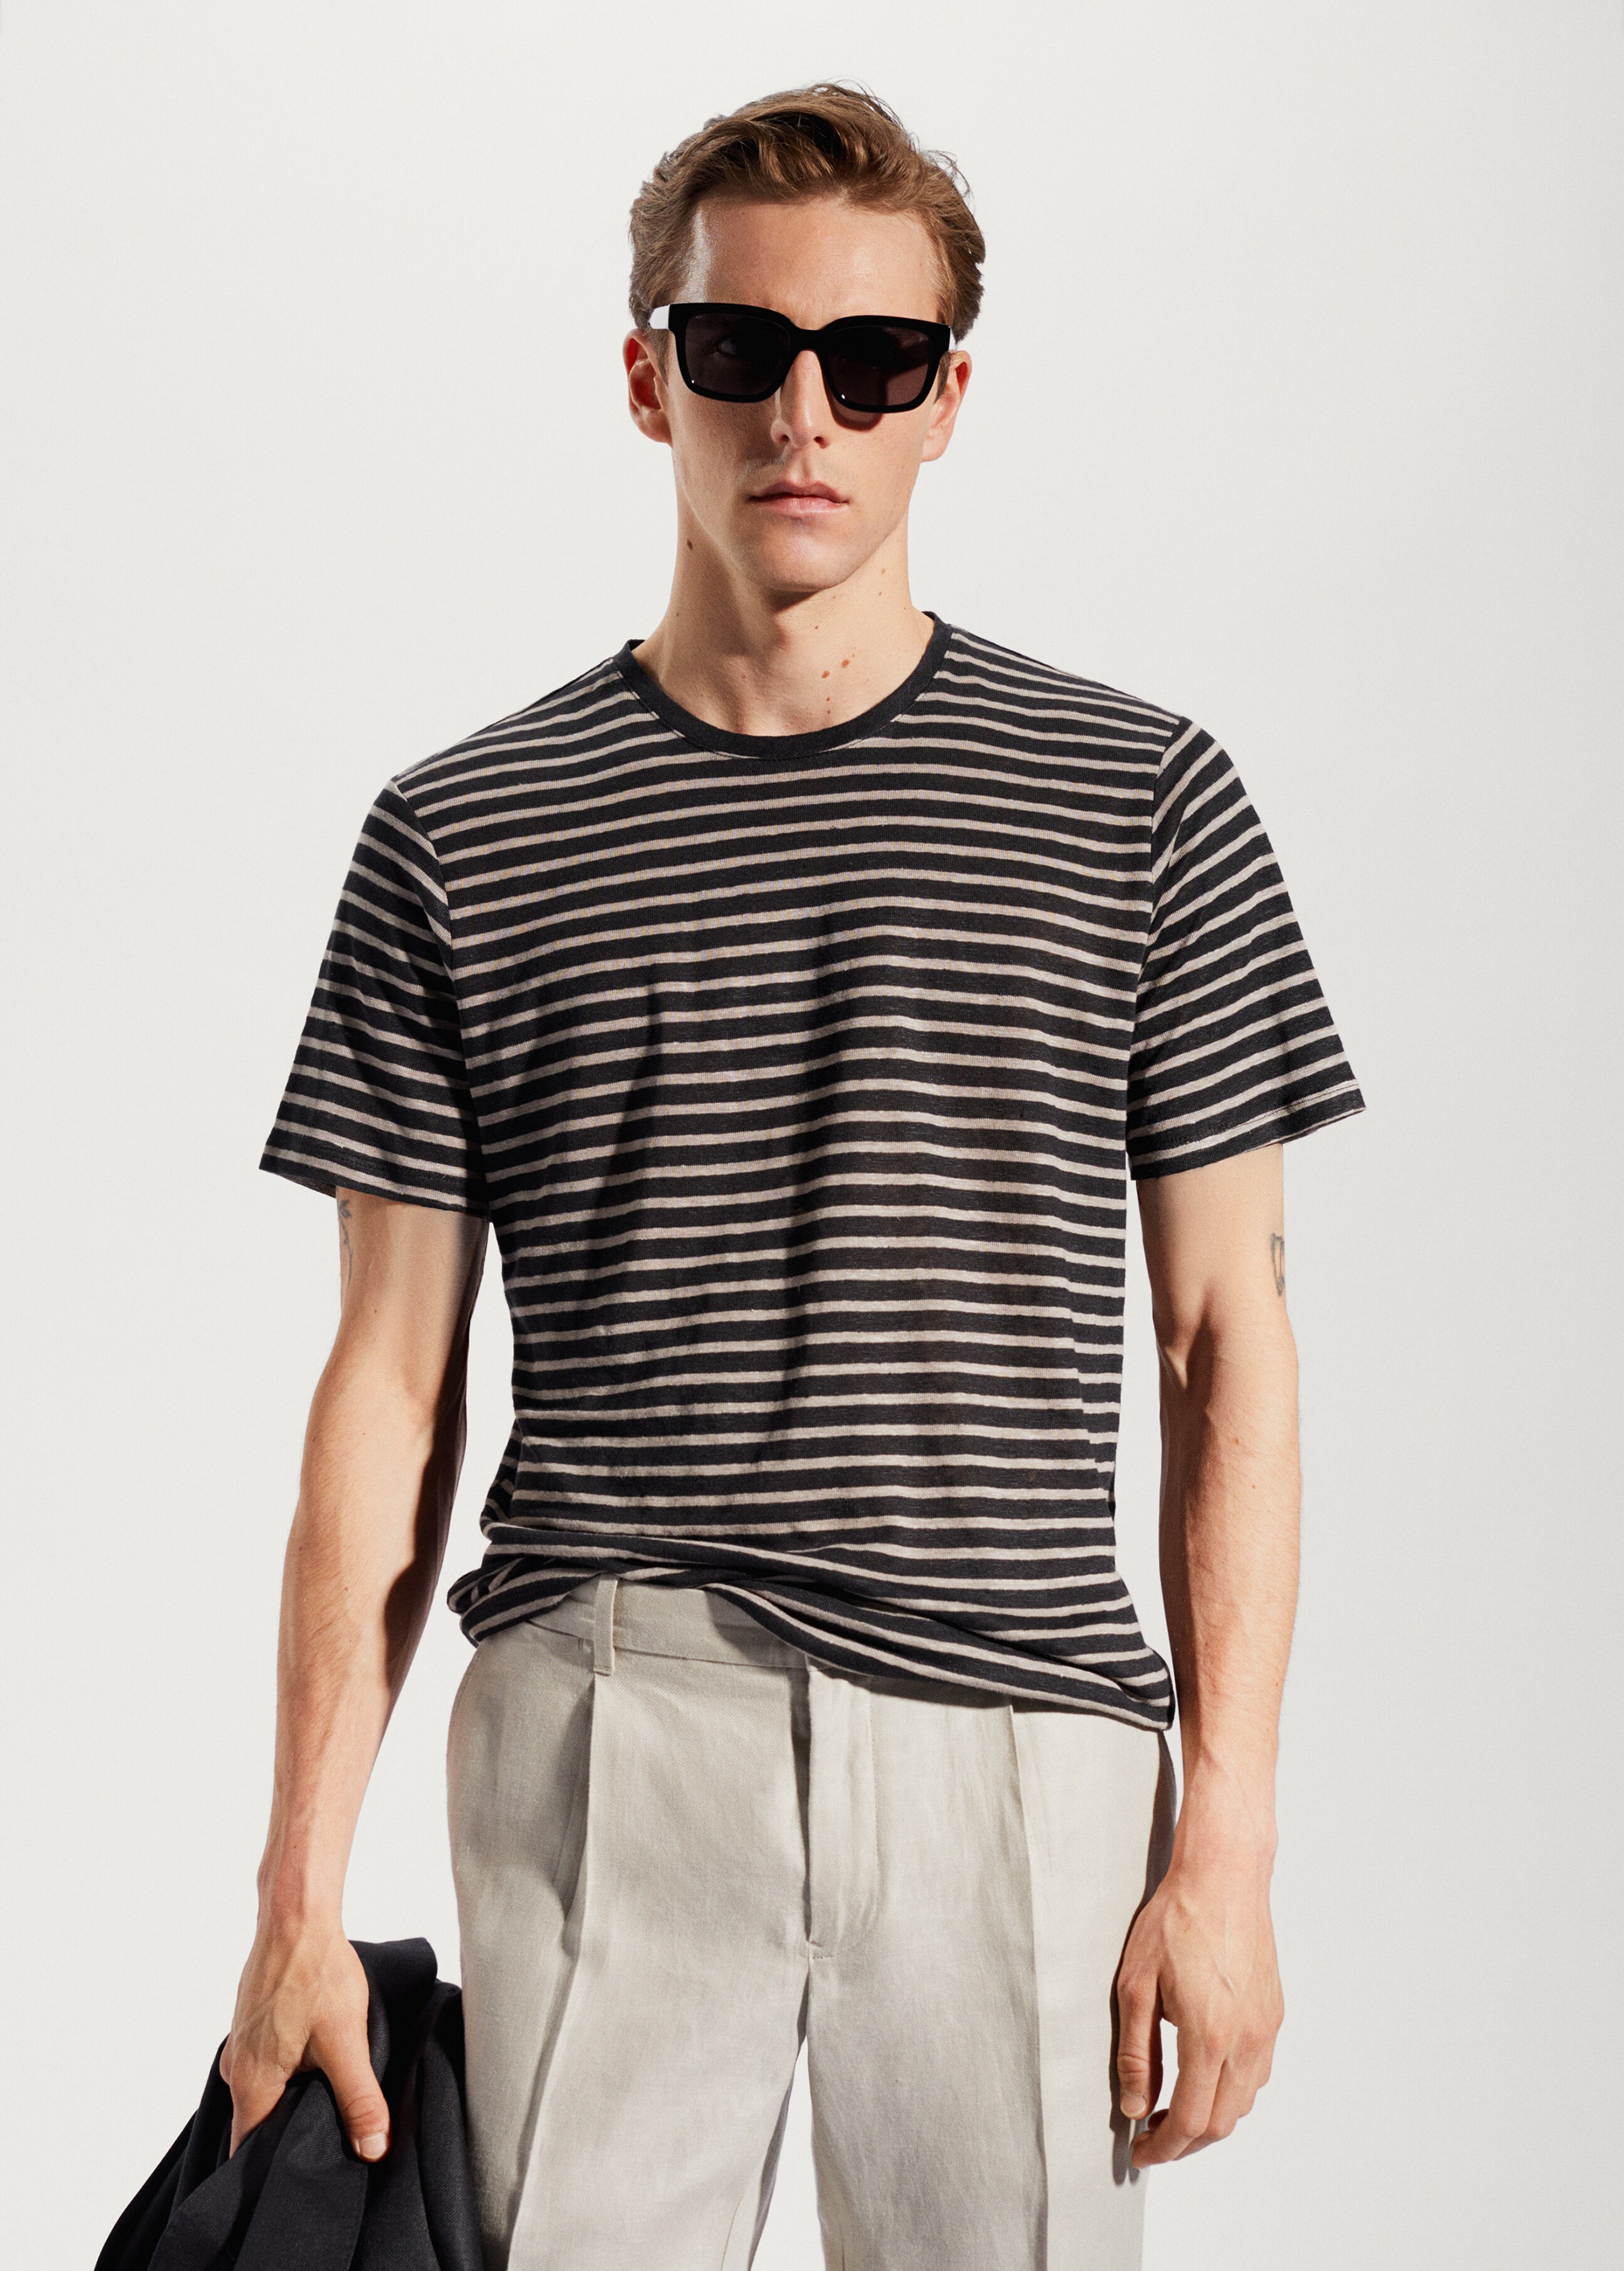 100% linen striped t-shirt - Medium plane